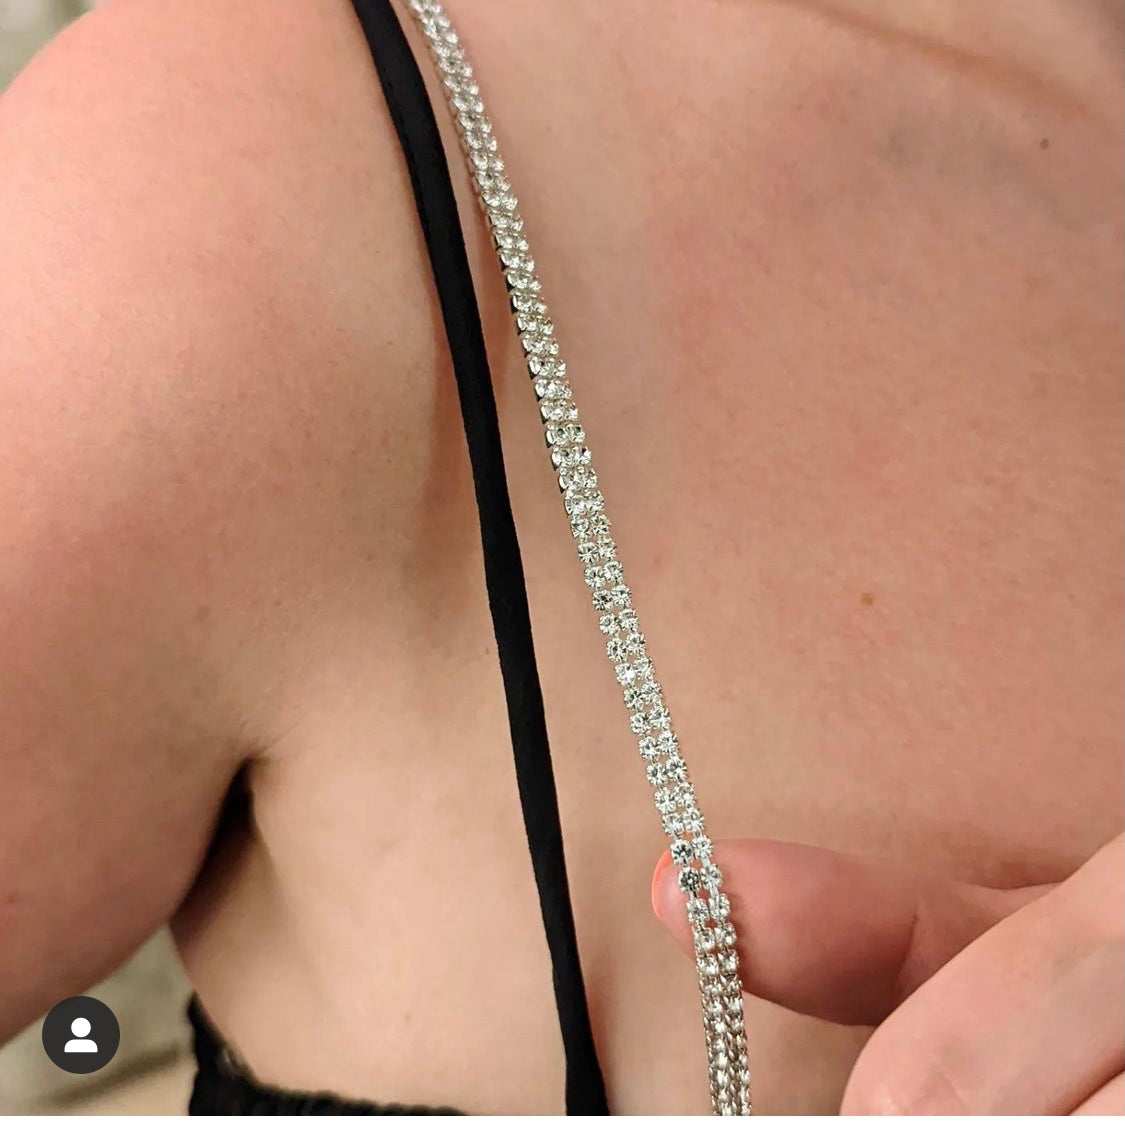 rhinestone bra straps 2 rows – All There Boutique